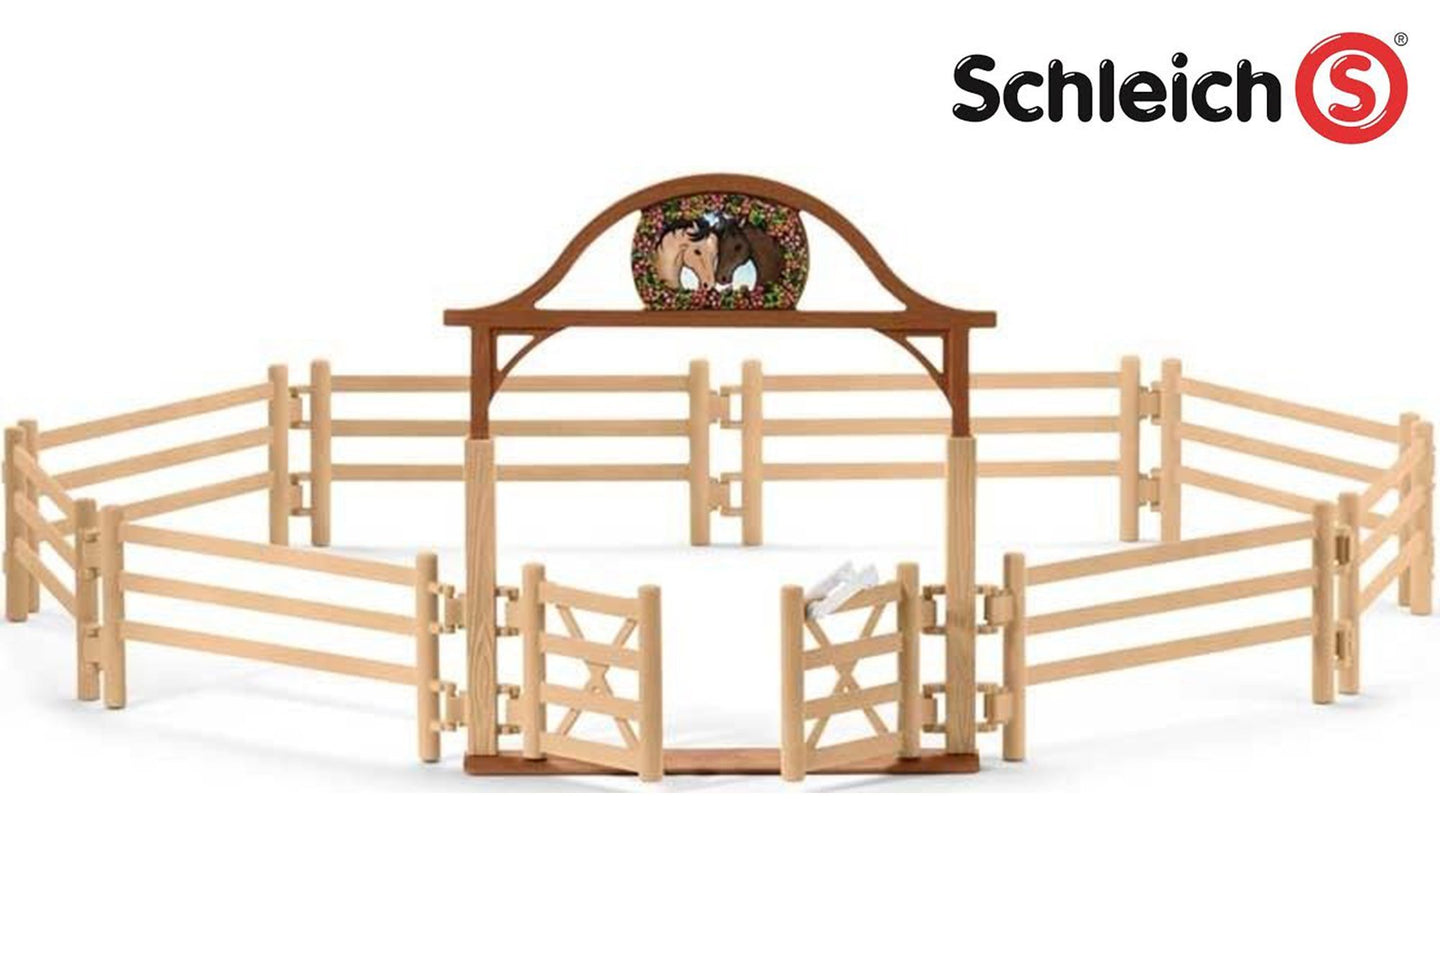 SL42434 Schleich Horse Club Paddock Railings with Gate